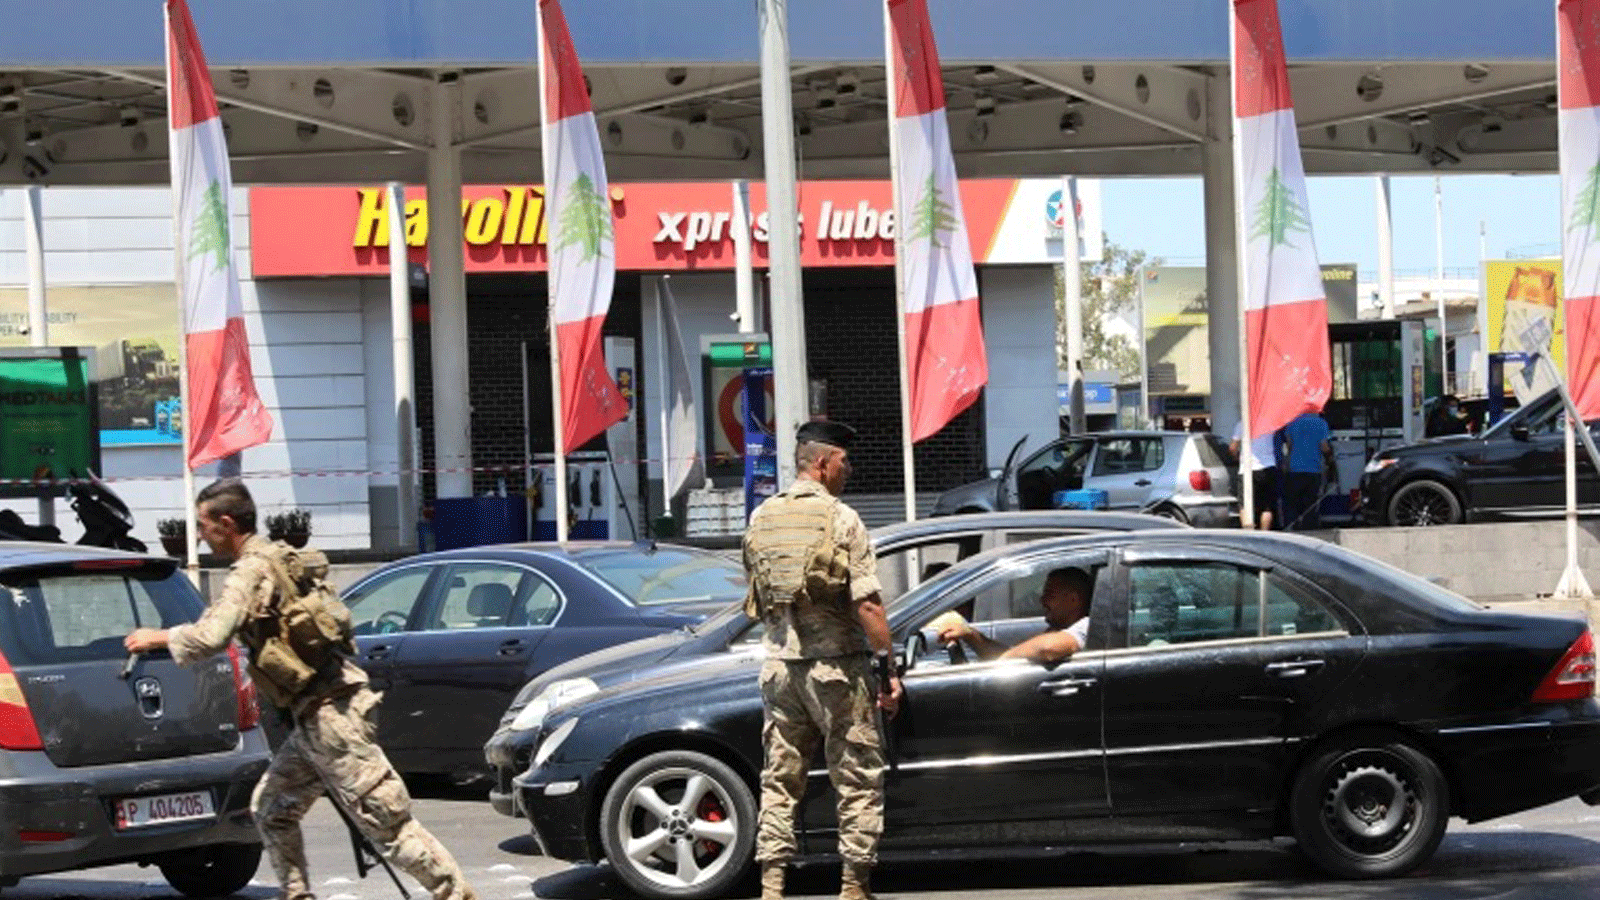 جندي لبناني يوجه حركة المرور في محطة بنزين في العاصمة بيروت يوم السبت 14 آب/ أغسطس 2021، بعد انتشار جنود لإجبار المحطات على تسليم الوقود للمواطنين.